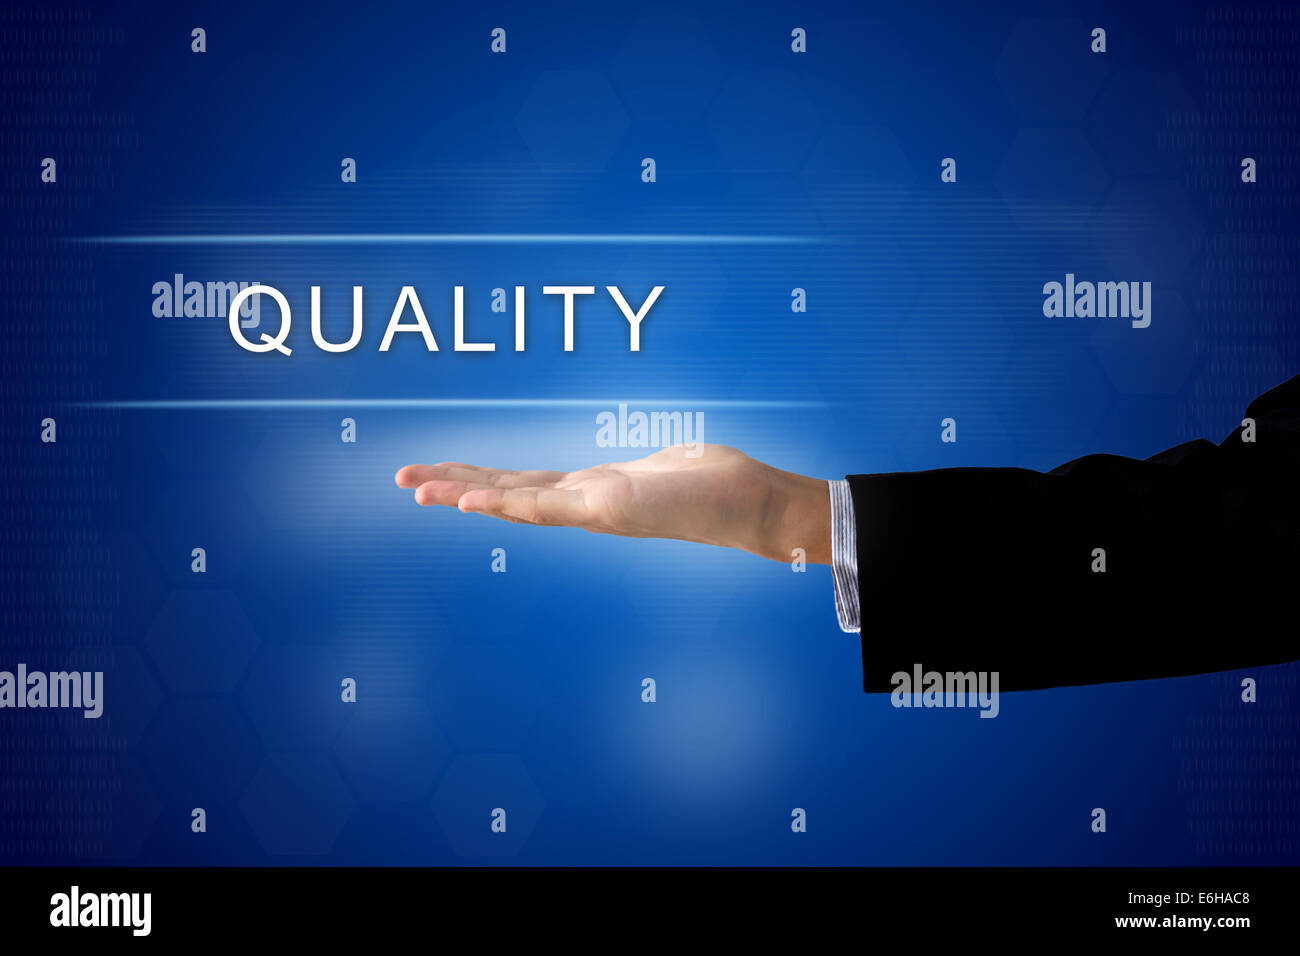 Botón de calidad empresarial con la mano en una interfaz de pantalla táctil Foto de stock